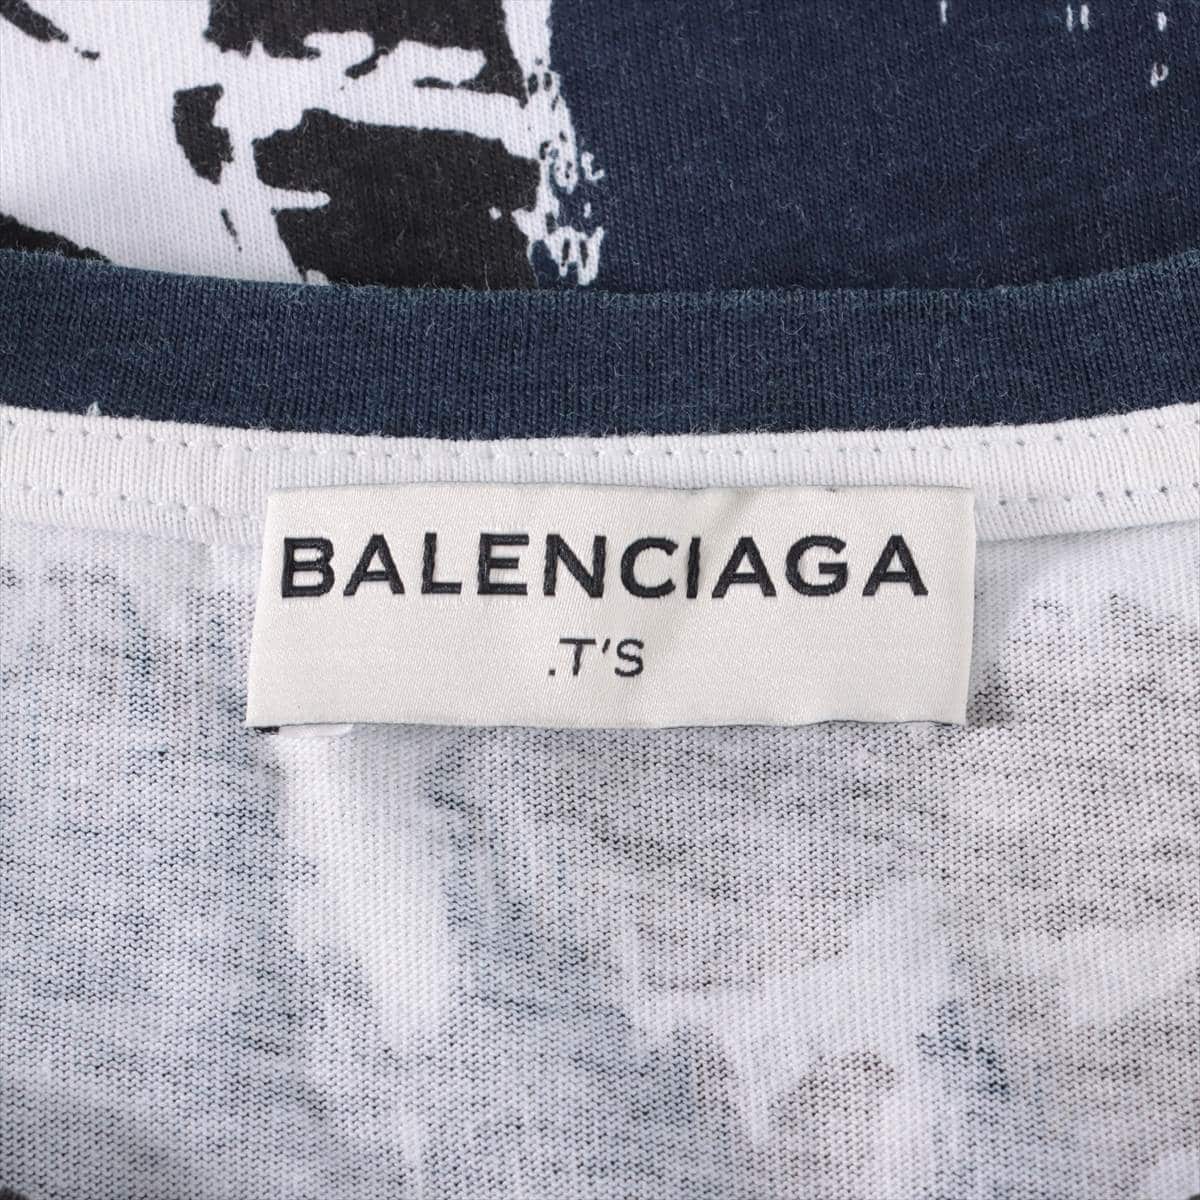 バレンシアガ 14年 コットン Tシャツ S メンズ ネイビー